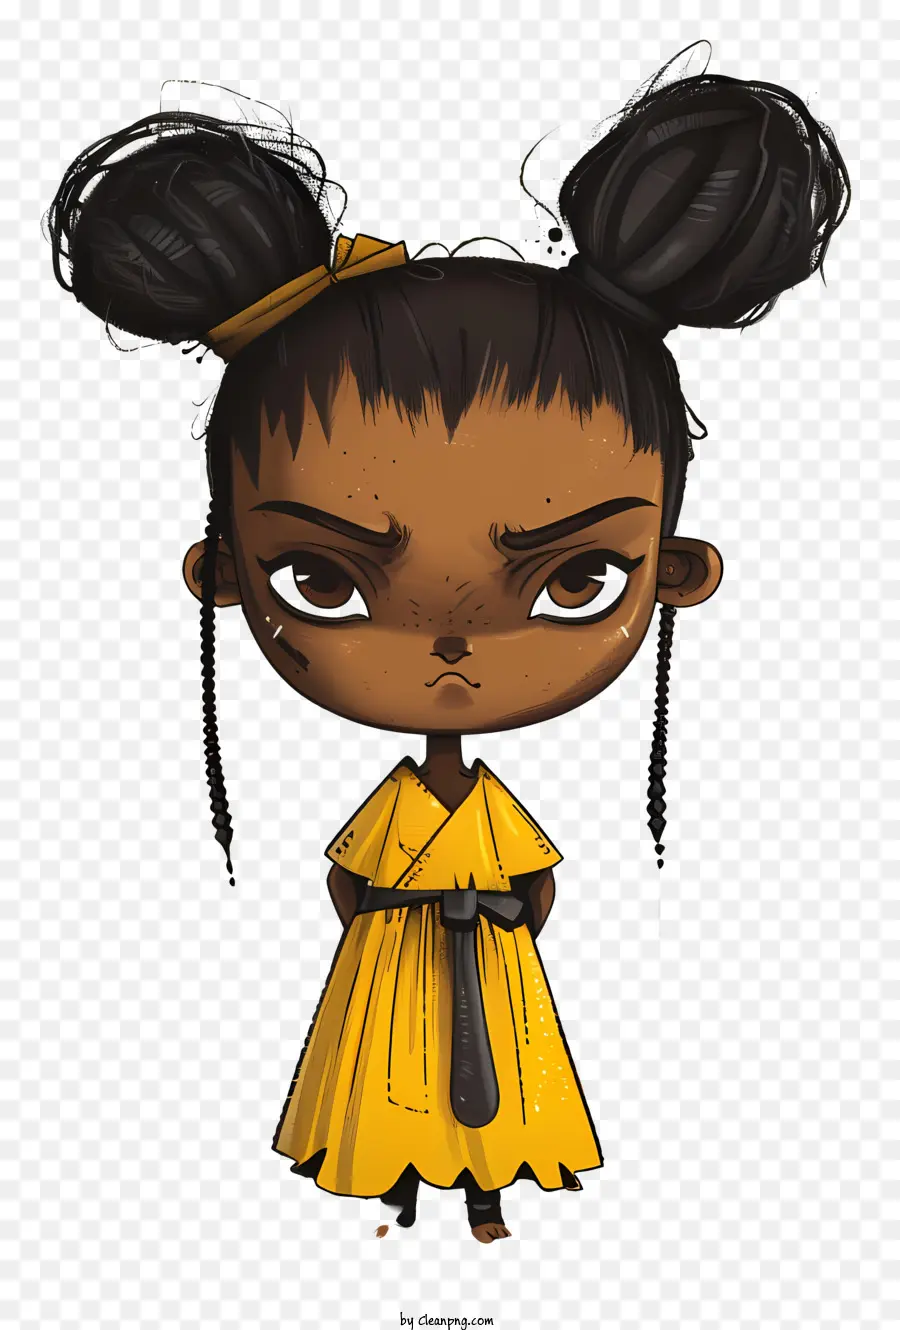 african girl manga character anime determined girl black hair